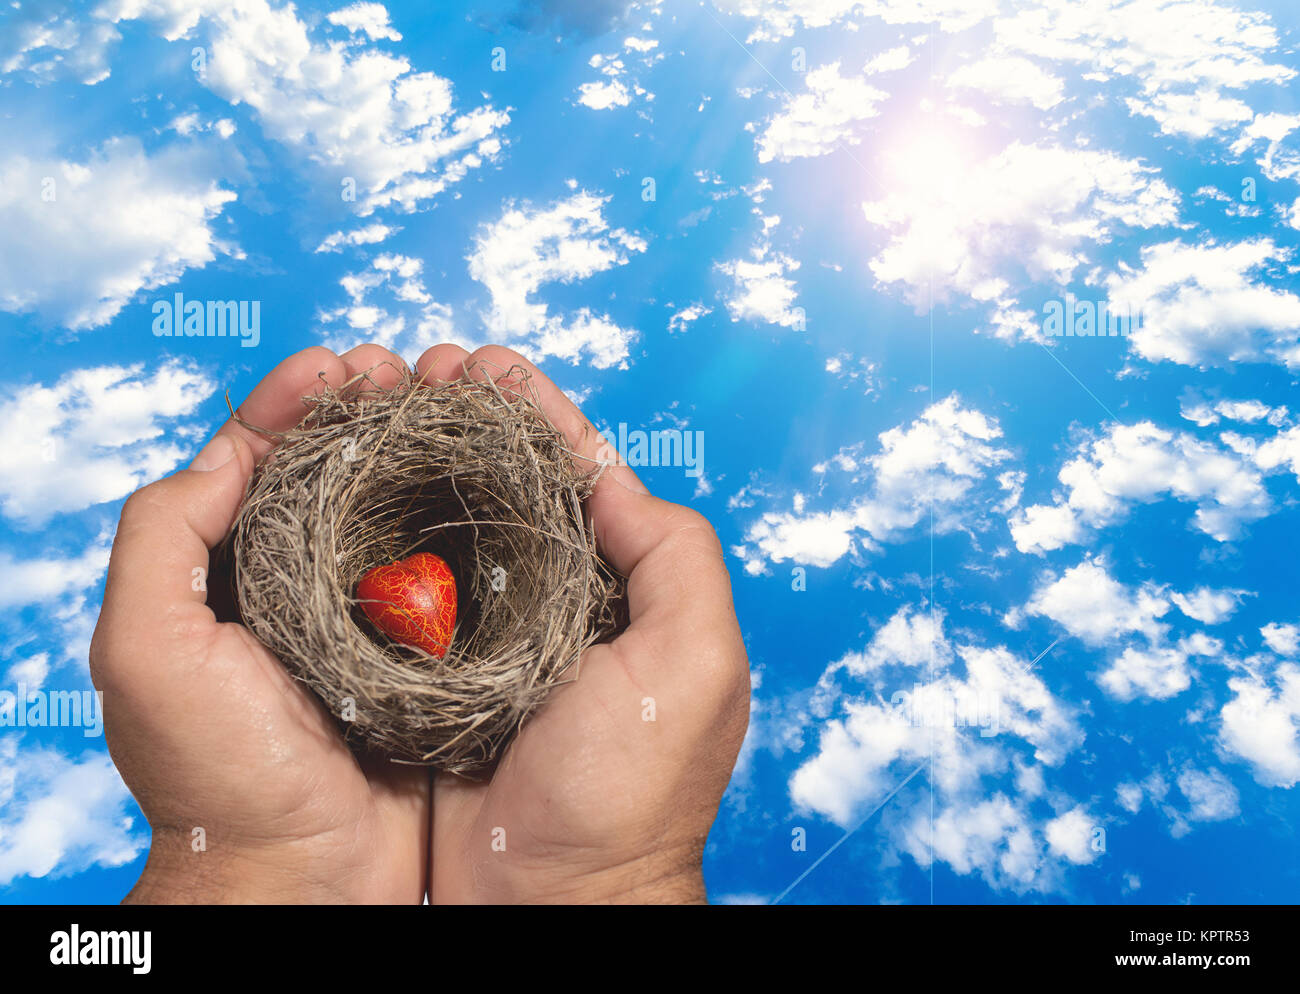 Des mains d'garder un nid naturel avec un cœur rouge à l'intérieur et un enfant essaie d'atteindre ce nid. Les liens familiaux, de protection, de sécurité, d'espoir, de solidarité. Banque D'Images